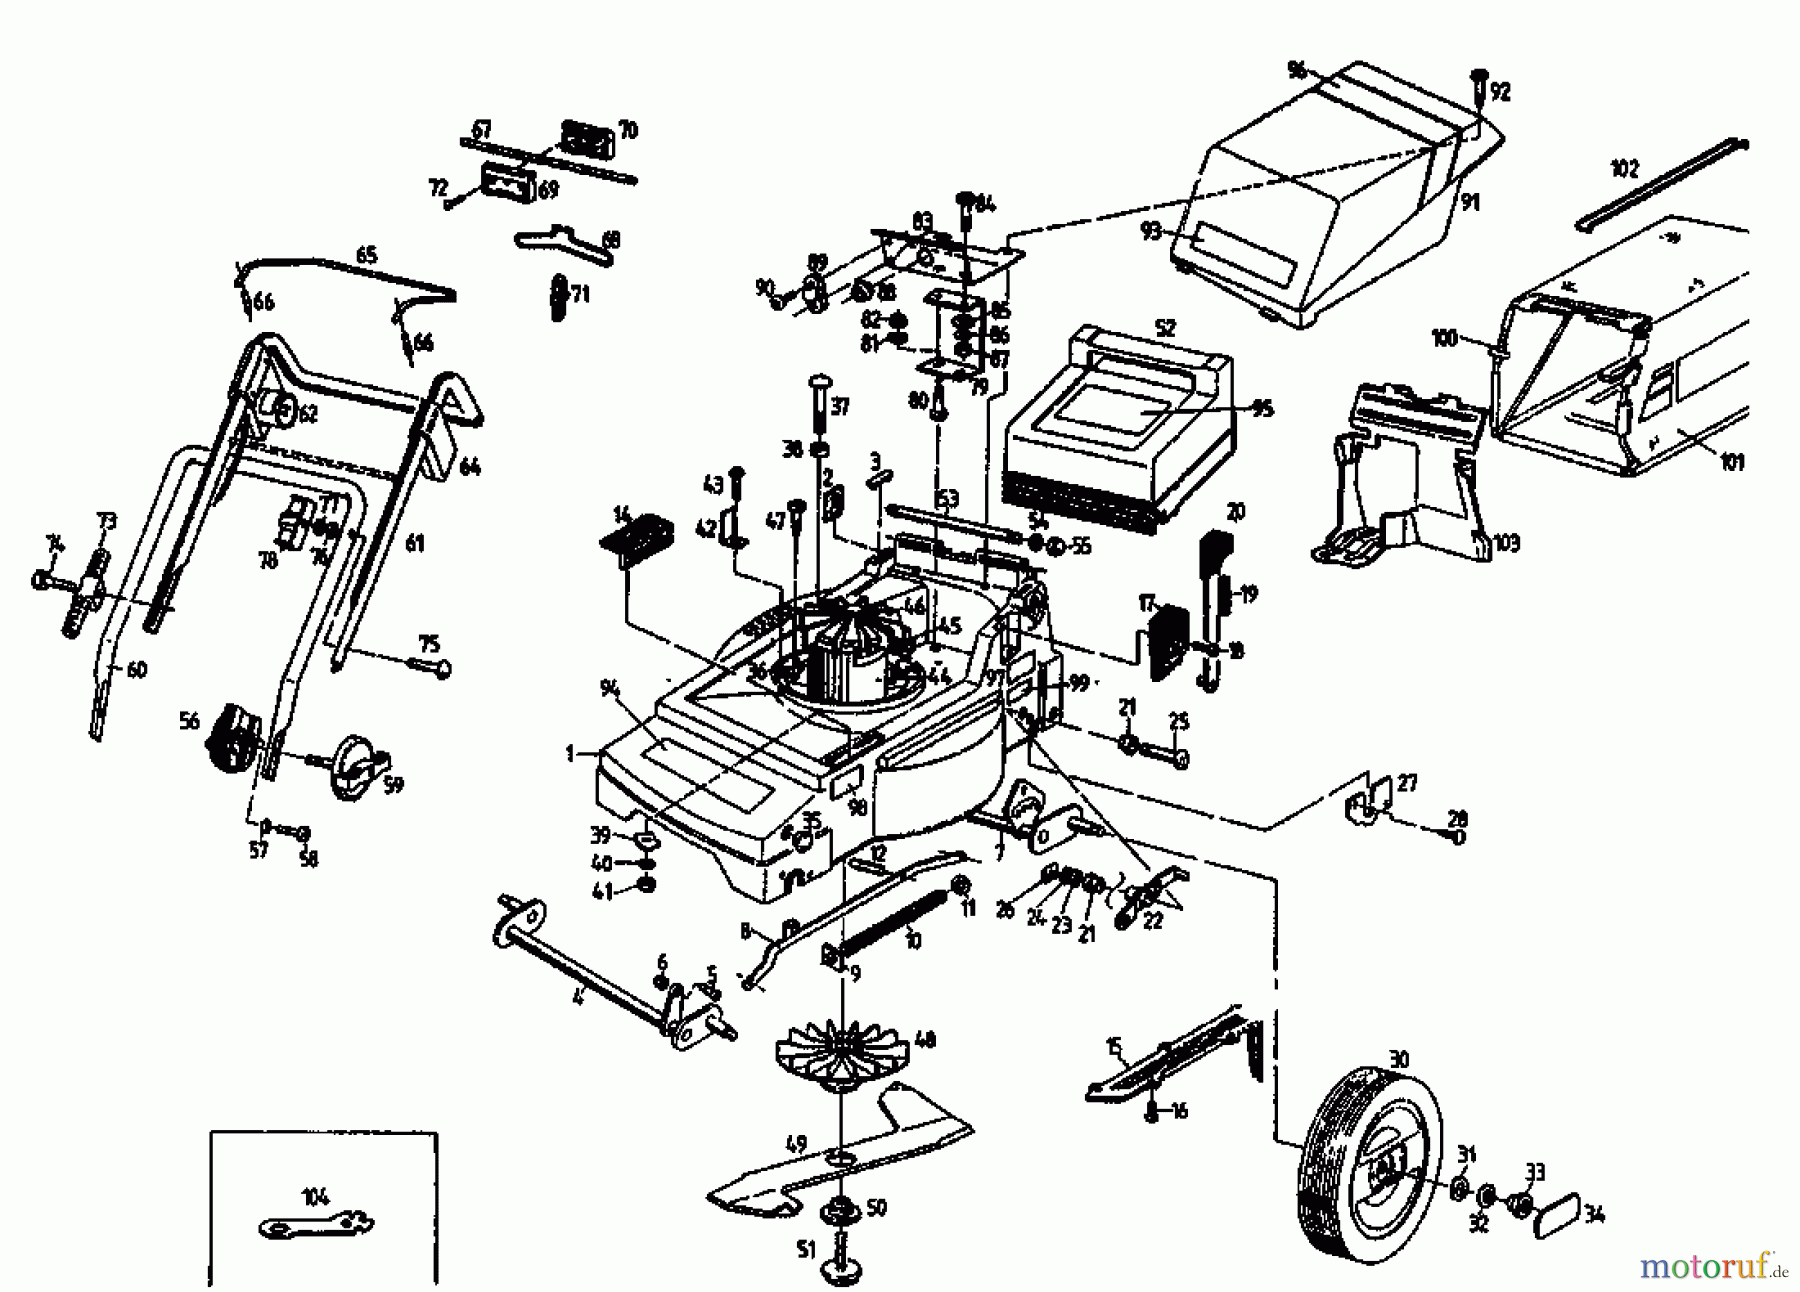  Gutbrod Tondeuse électrique MHE 400 04019.01  (1994) Machine de base